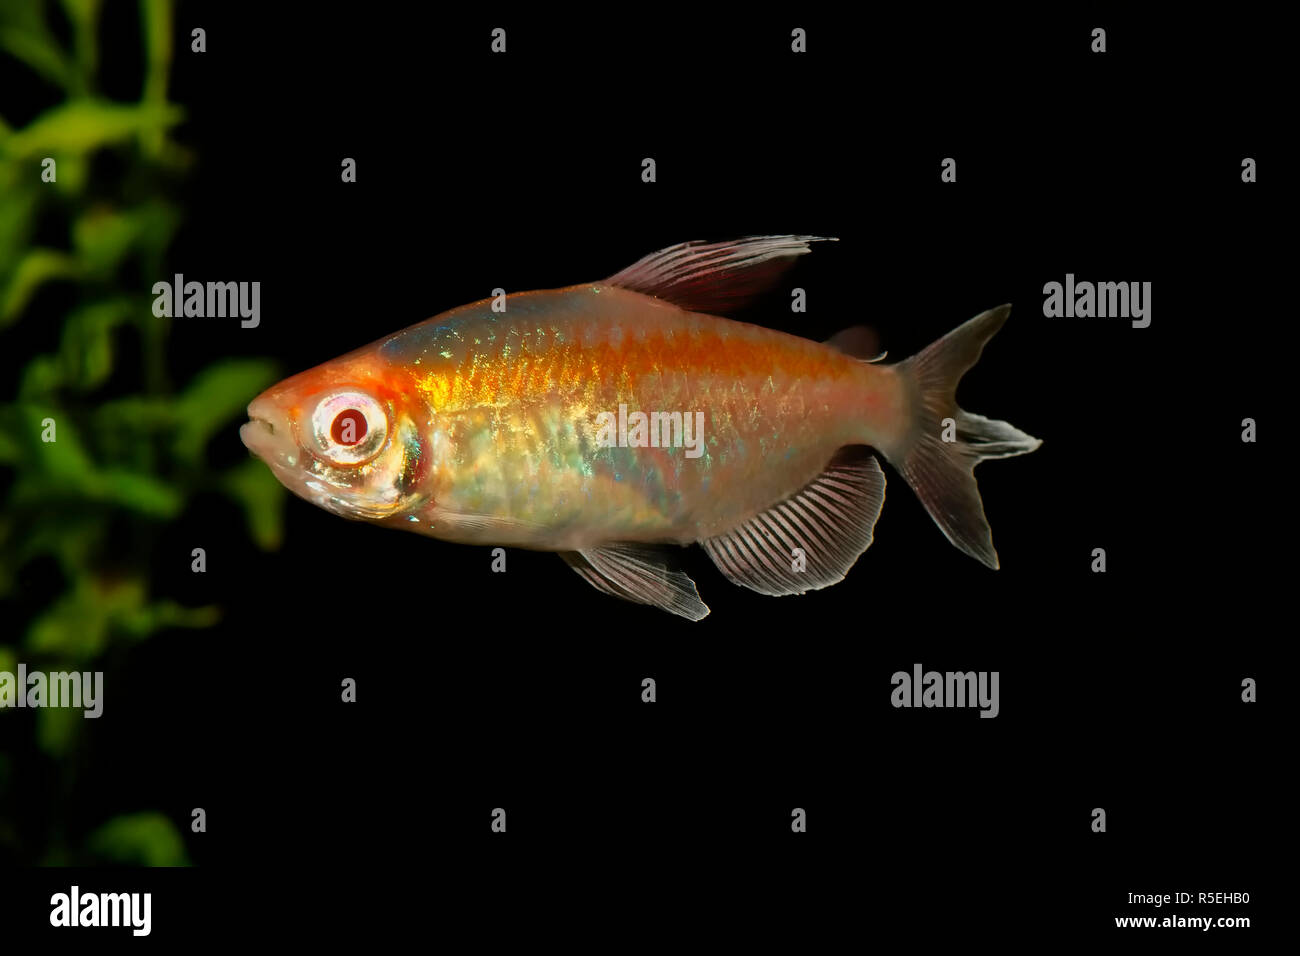 Portrait of aquarium fish - Congo tetra (Phenacogrammus interruptus) isolated on black background Stock Photo